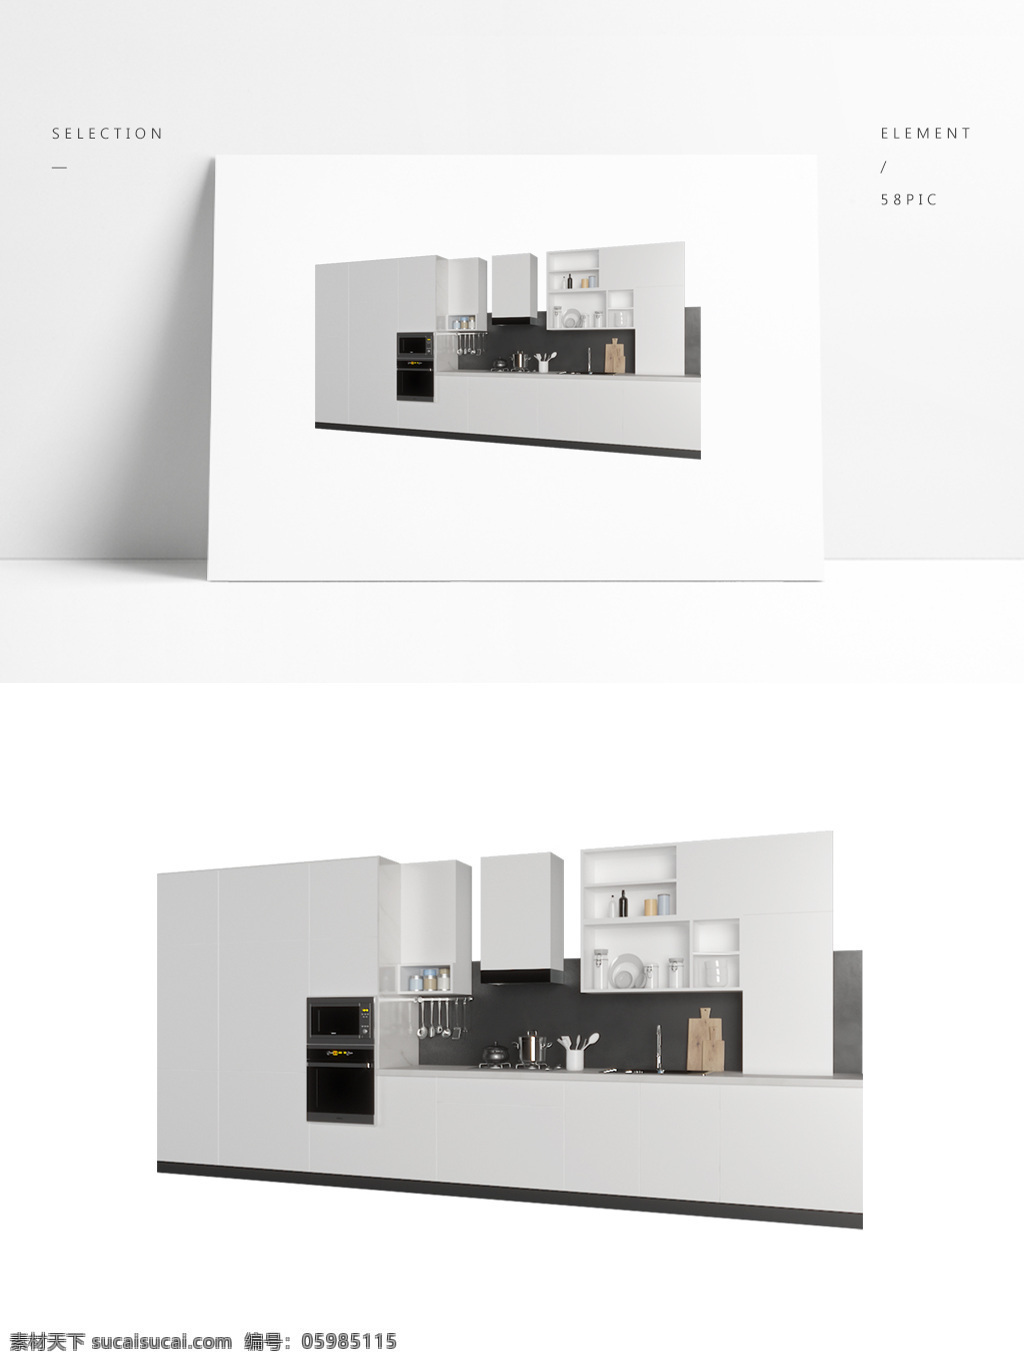 现代 简约 厨房 精品 橱柜 模型 黑白 餐具 橱柜组合 3d模型 厨房用具